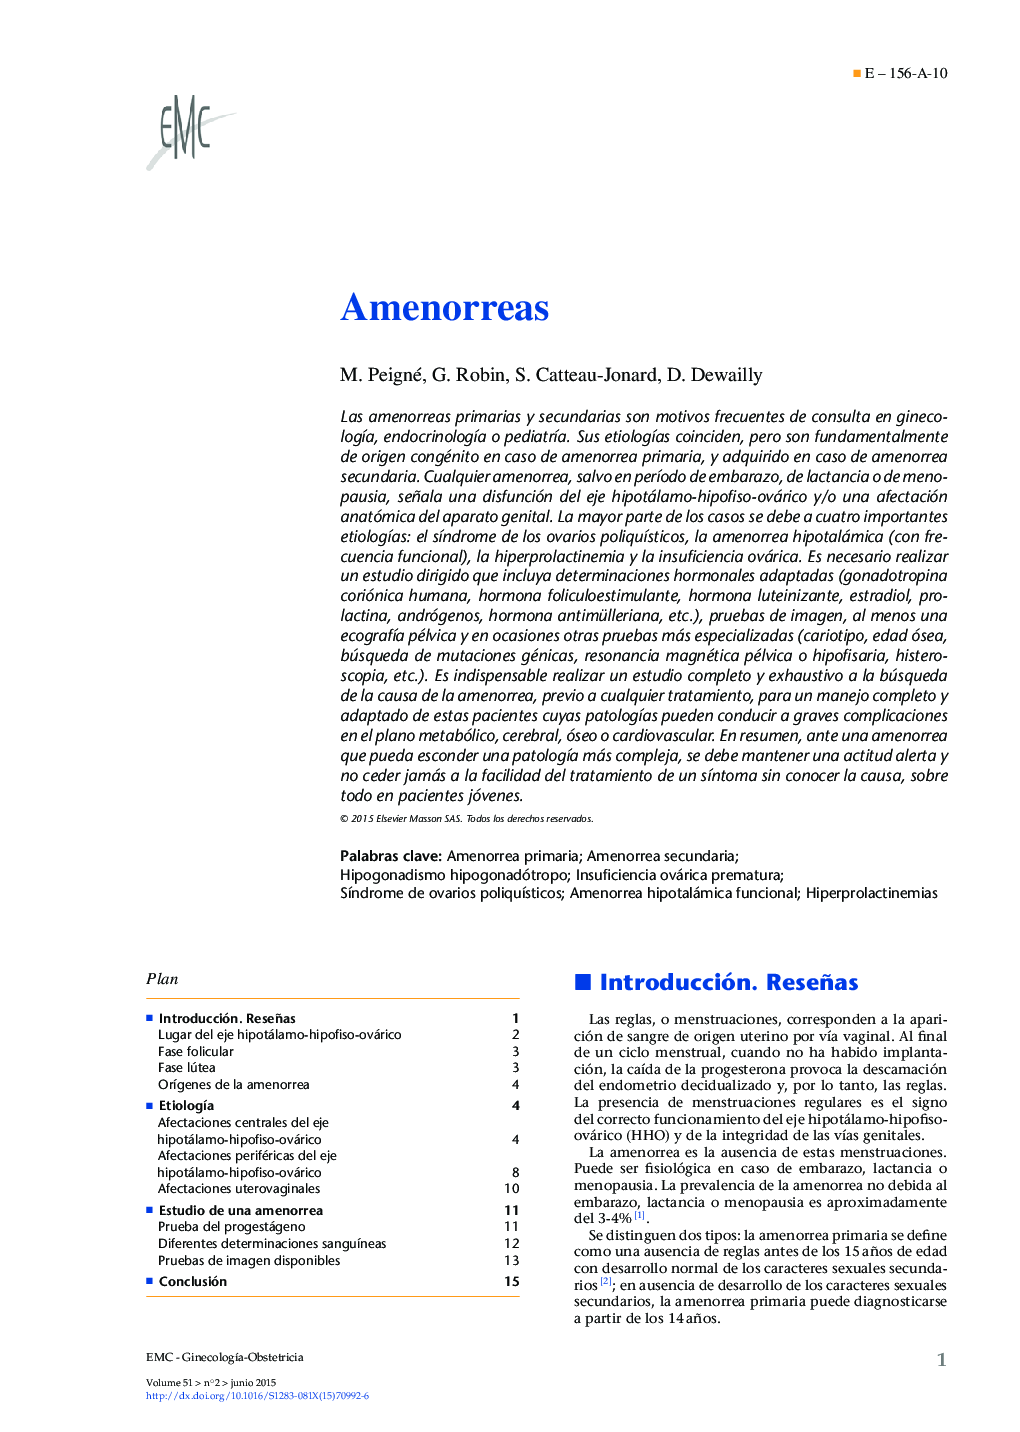 Amenorreas